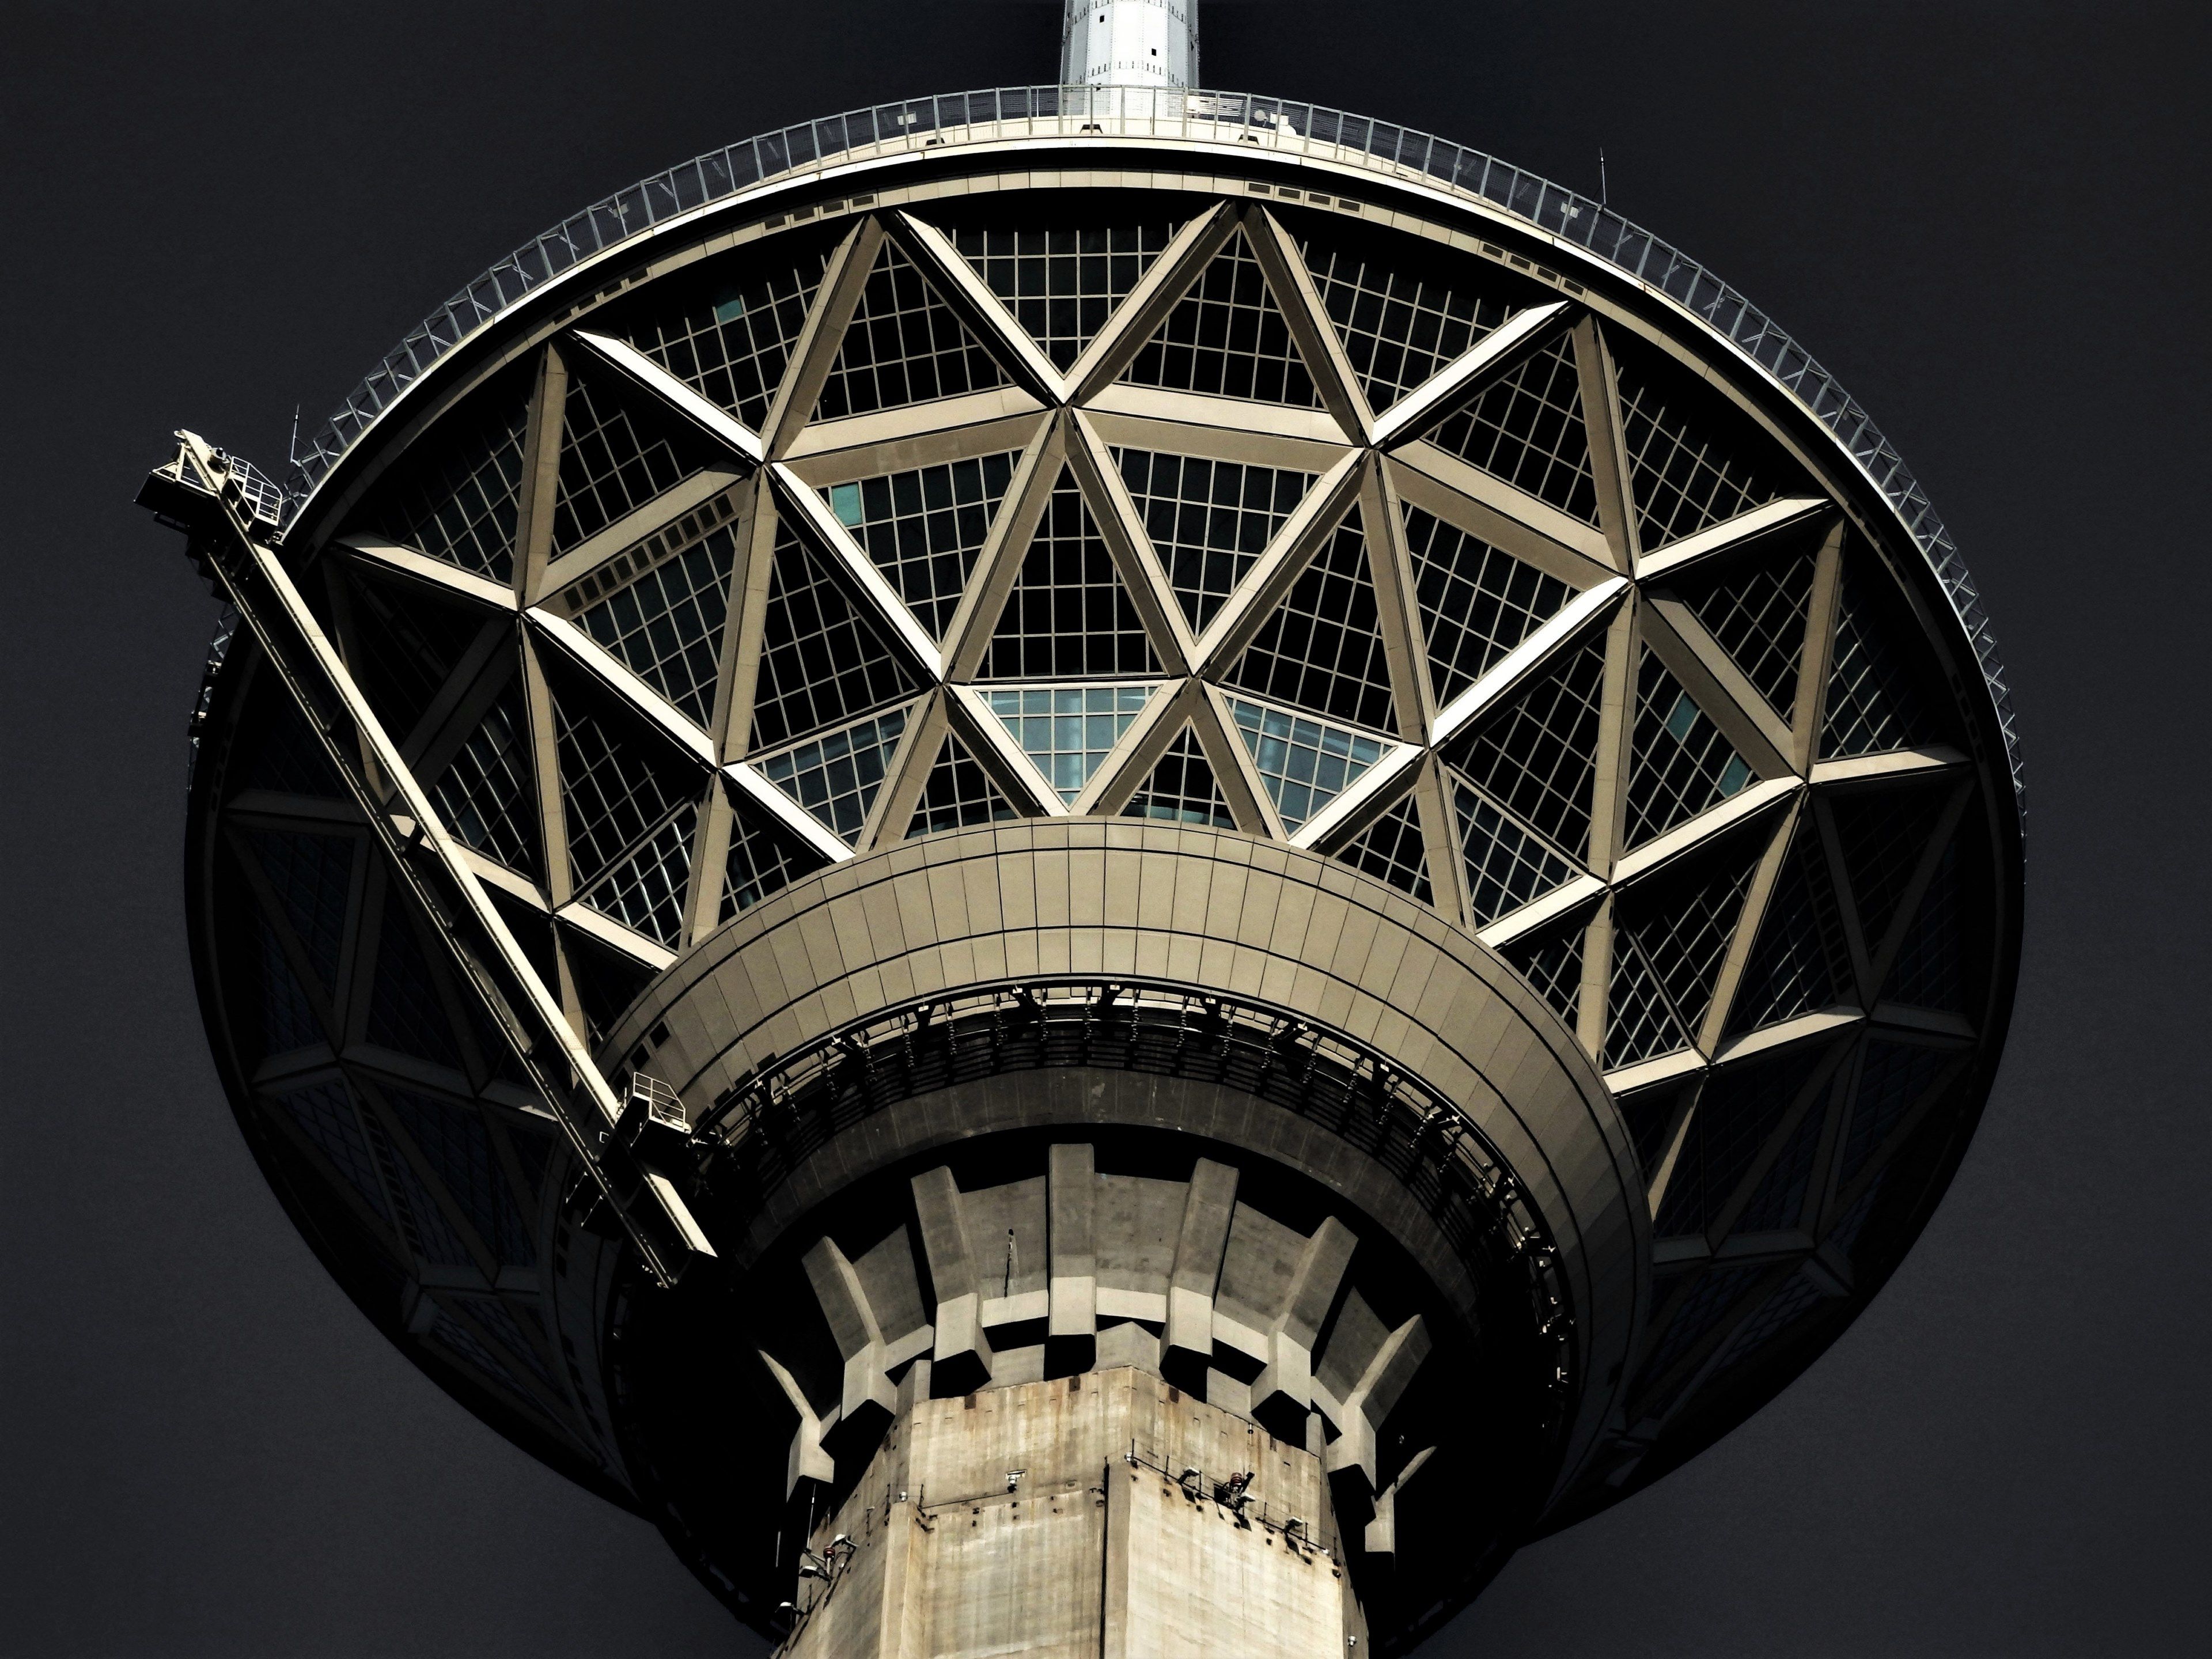 tehran milad tower 4k wallpaperwallpapercrafter.com